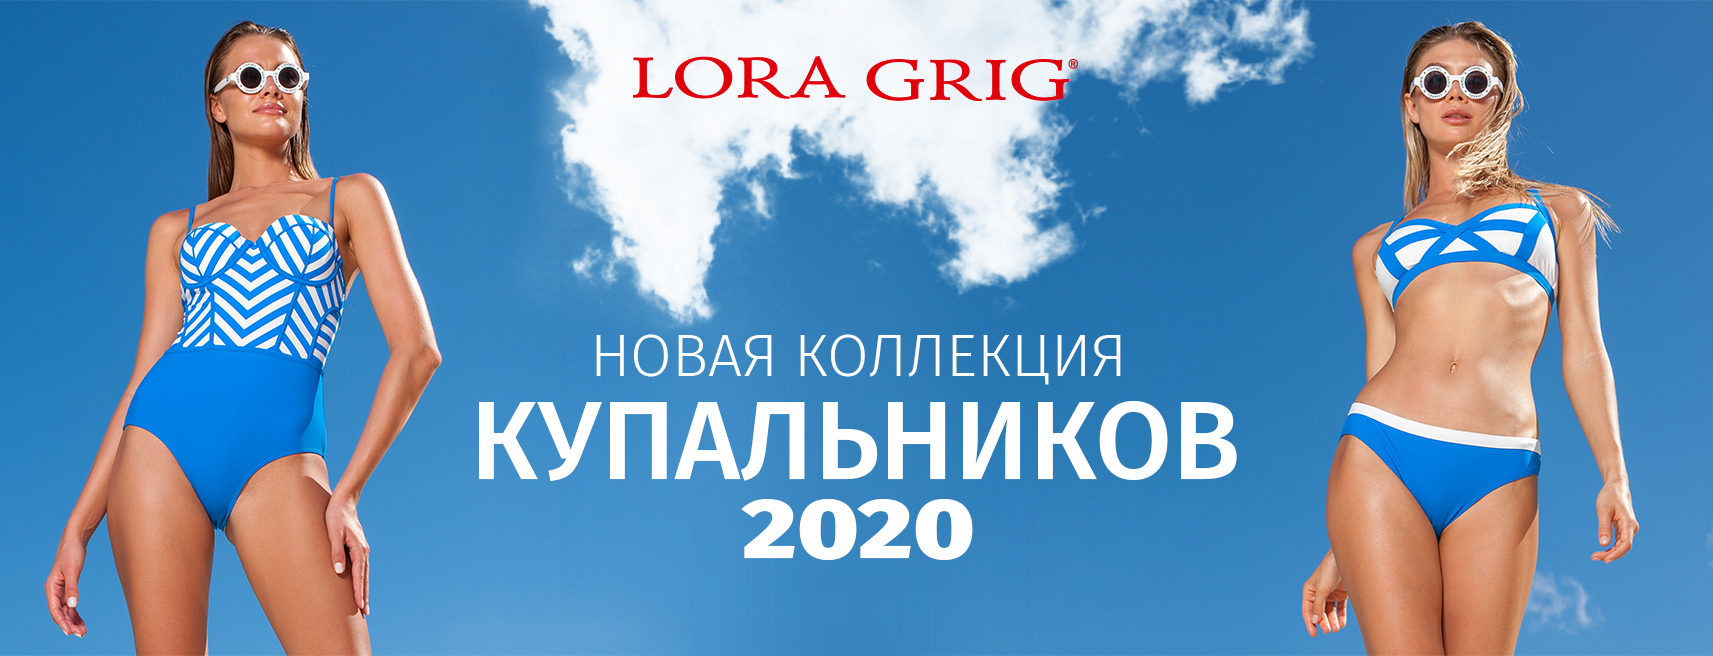 Lora Grig 2020